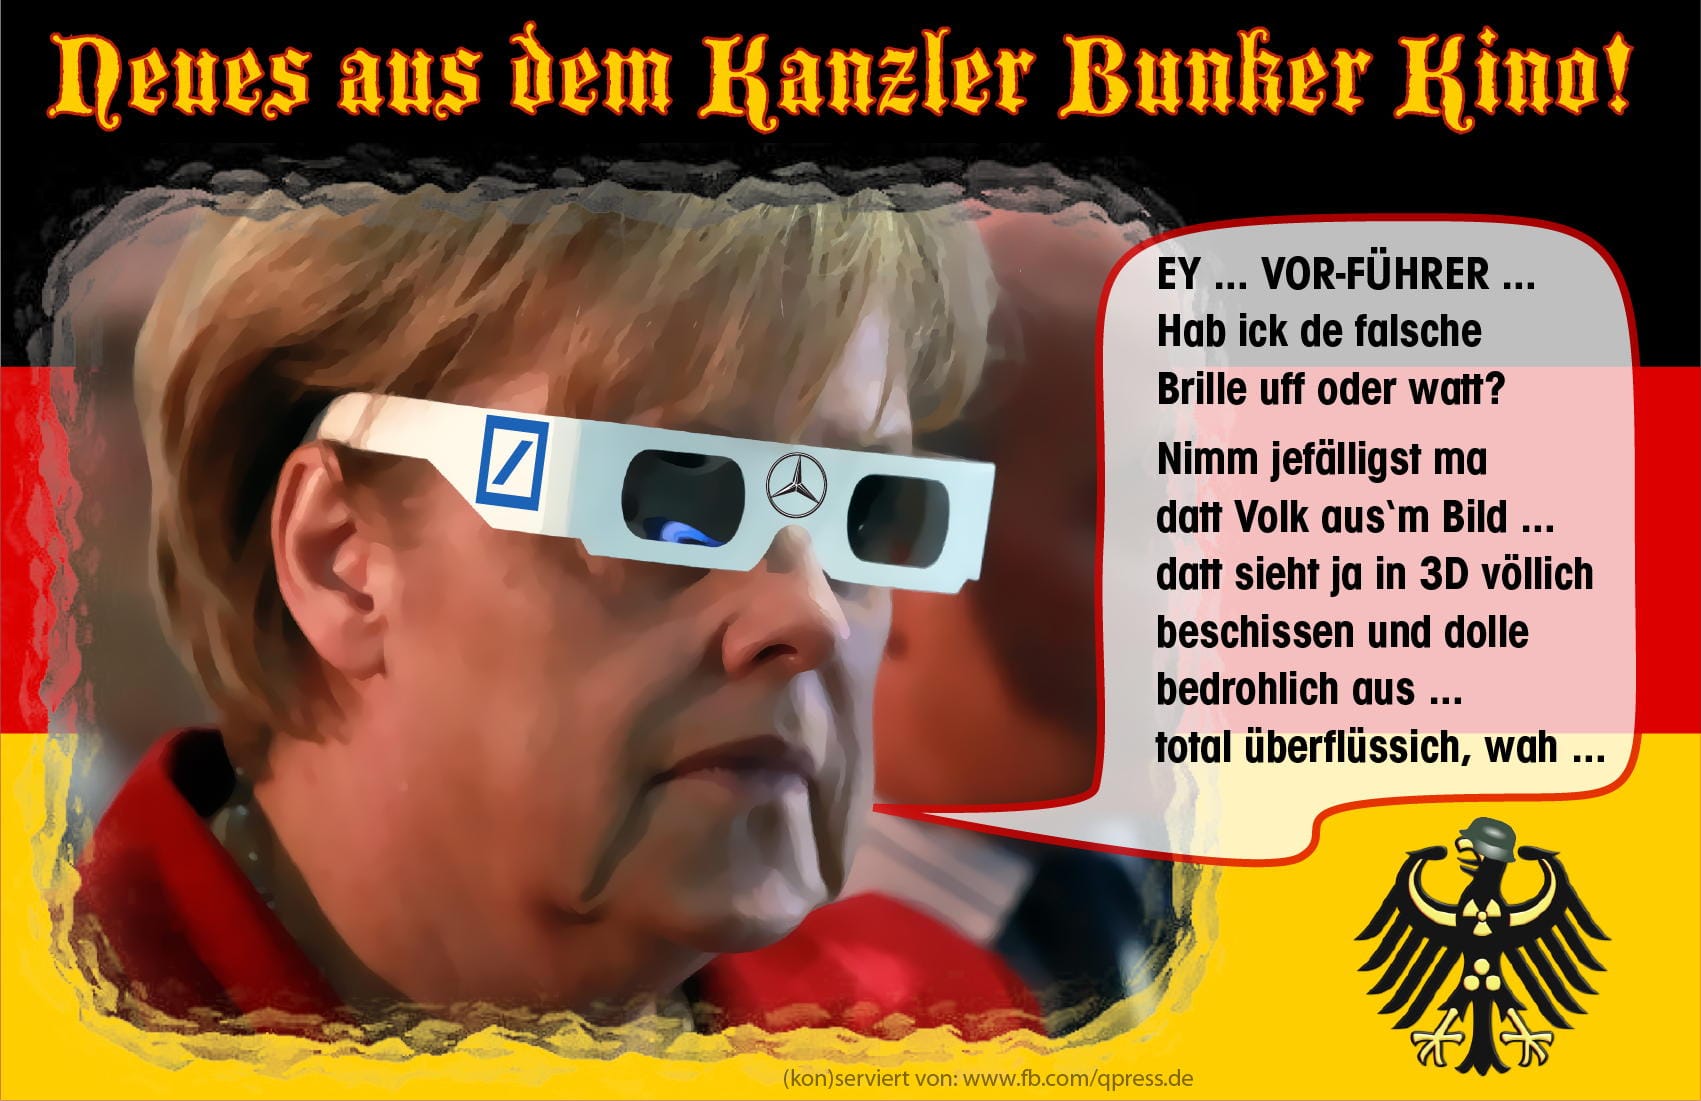 merkel_kanzlerbunkerkino_bonn_bunker_fuehrer_regierung_verschanzen_ausweichen_pigida_pegida_protest_boese_buerger